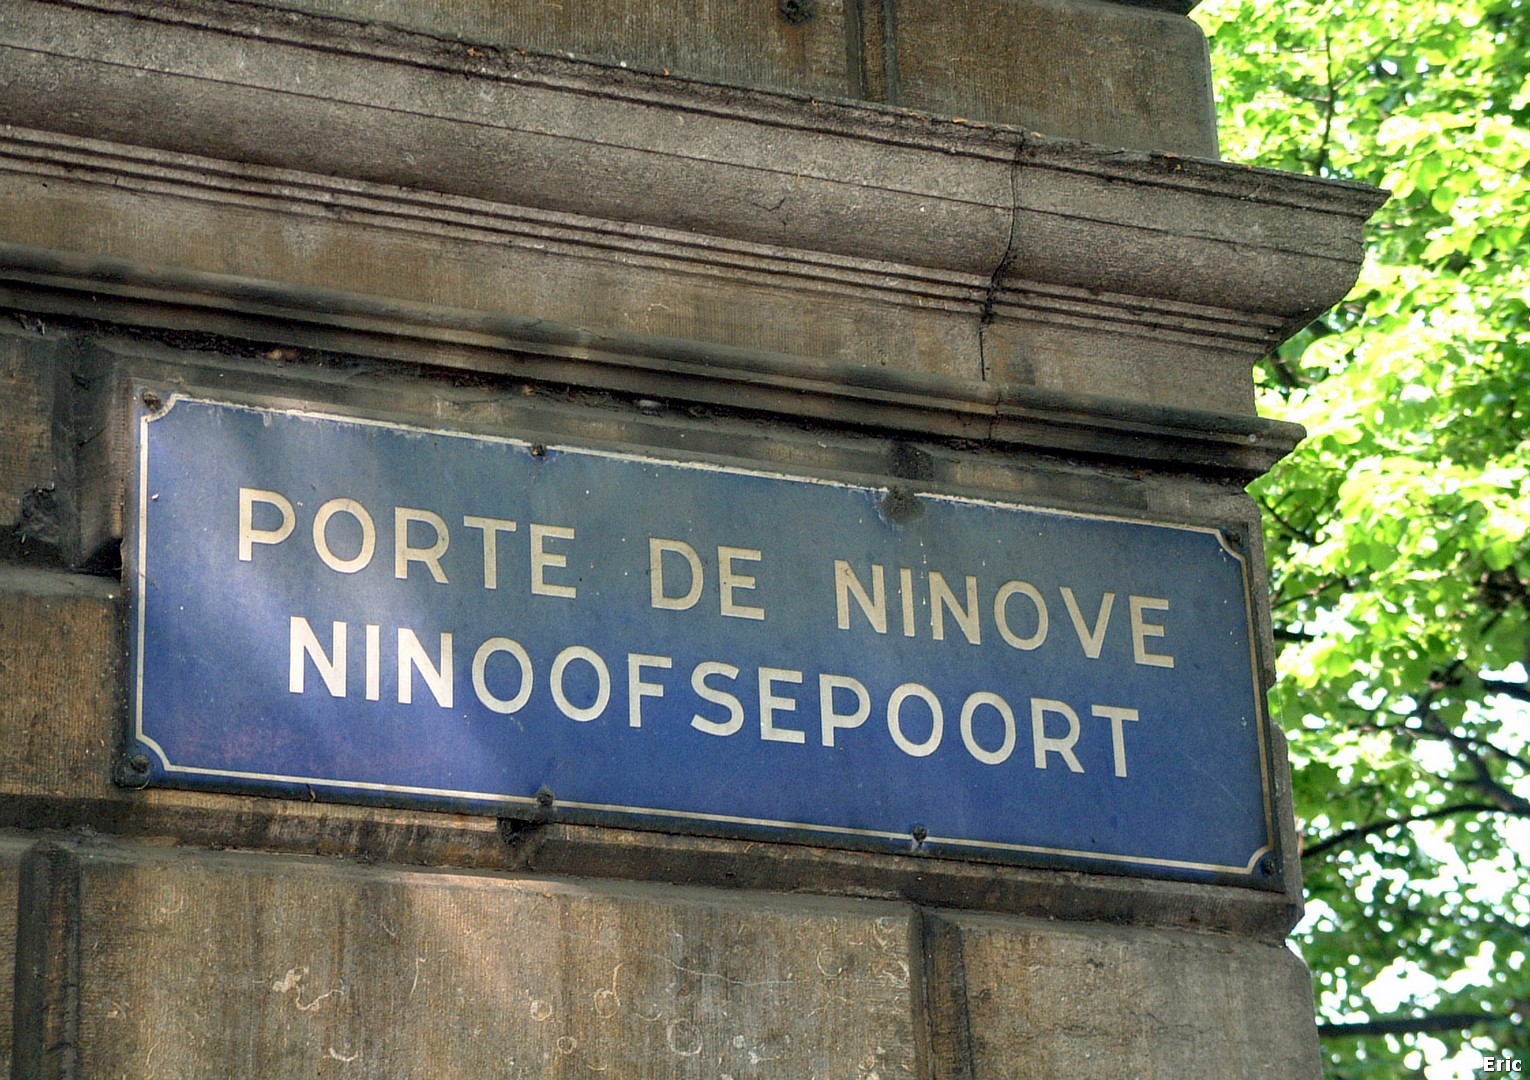 Porte de Ninove